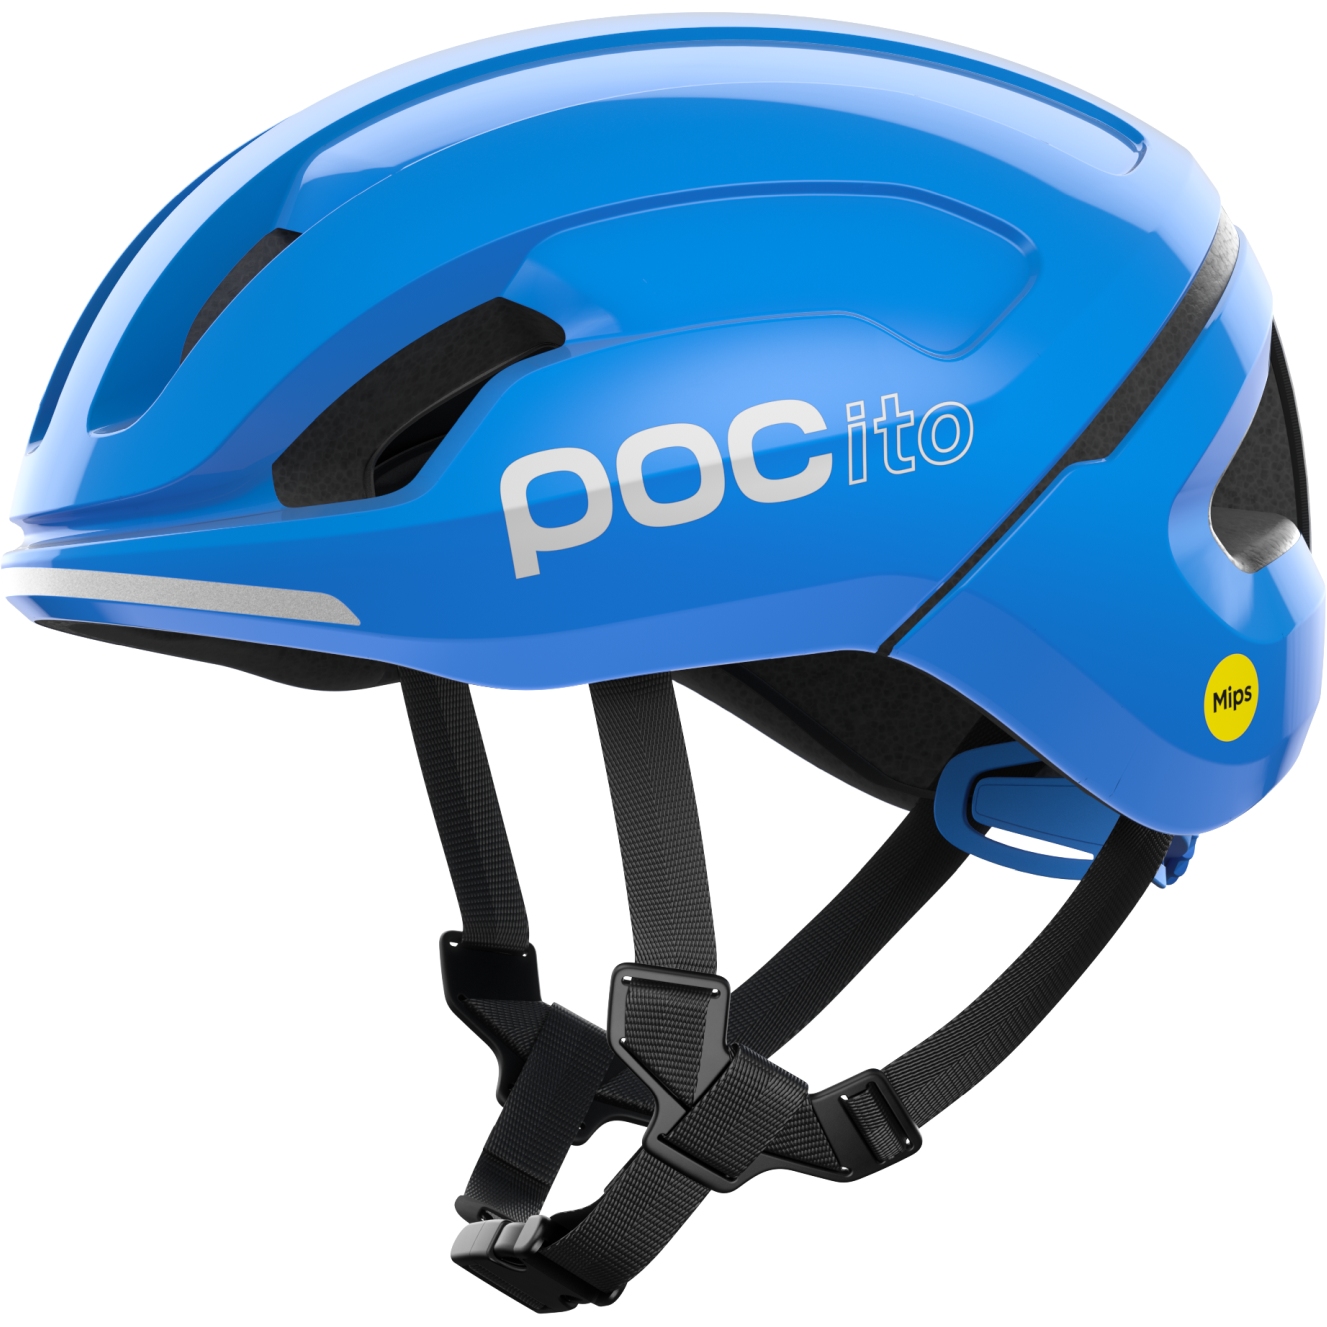 Produktbild von POC Pocito Omne MIPS Kinderhelm - 8233 fluorescent blue